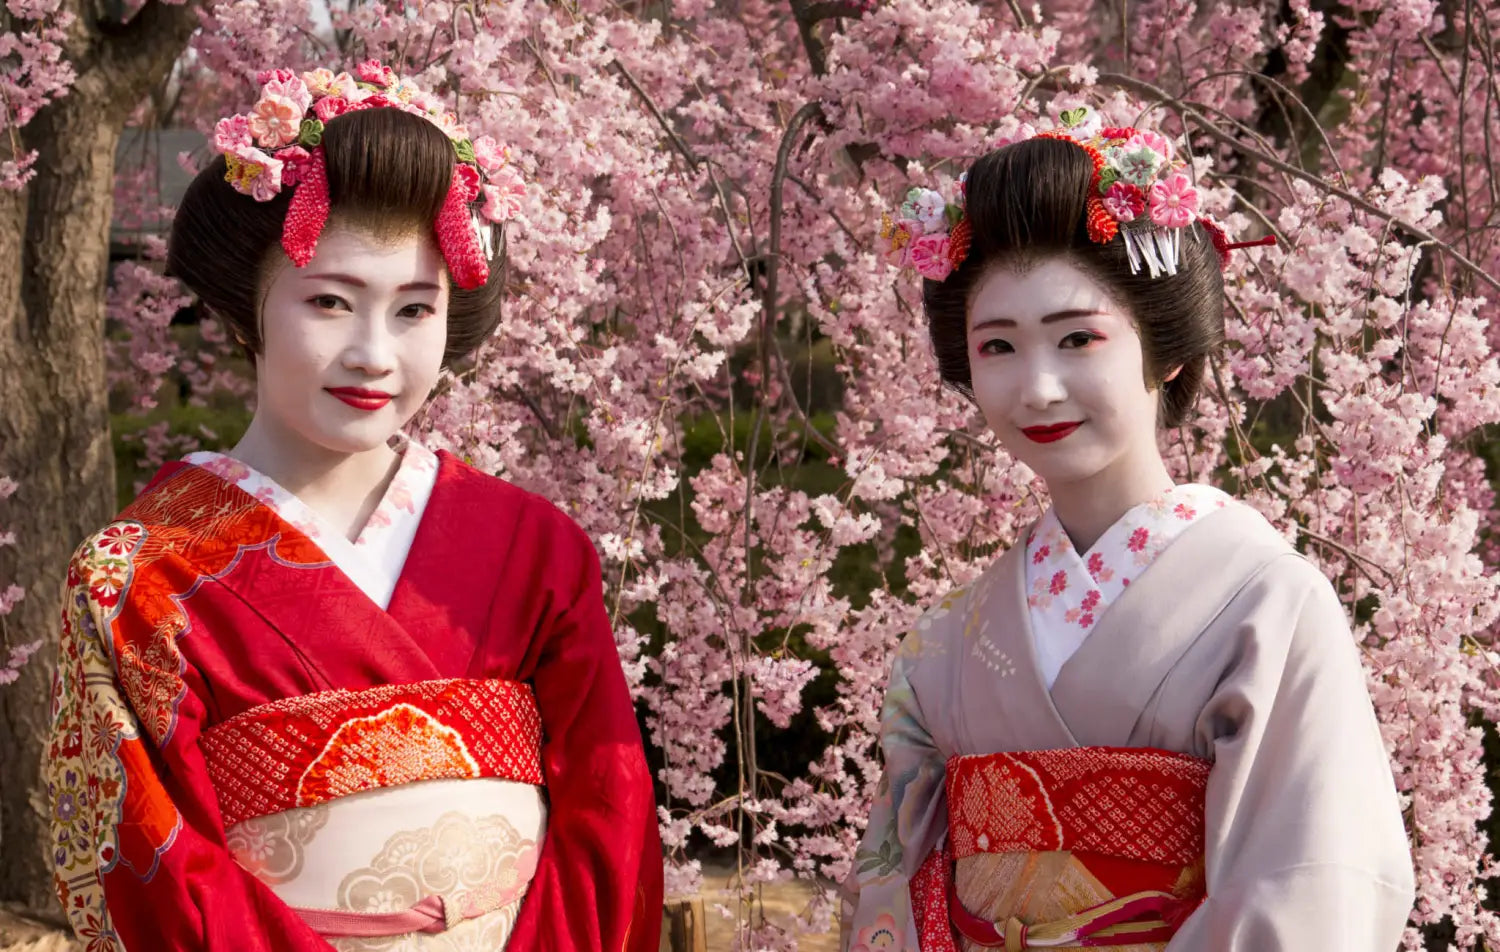 Les geishas japonaises: une tradition millénaire